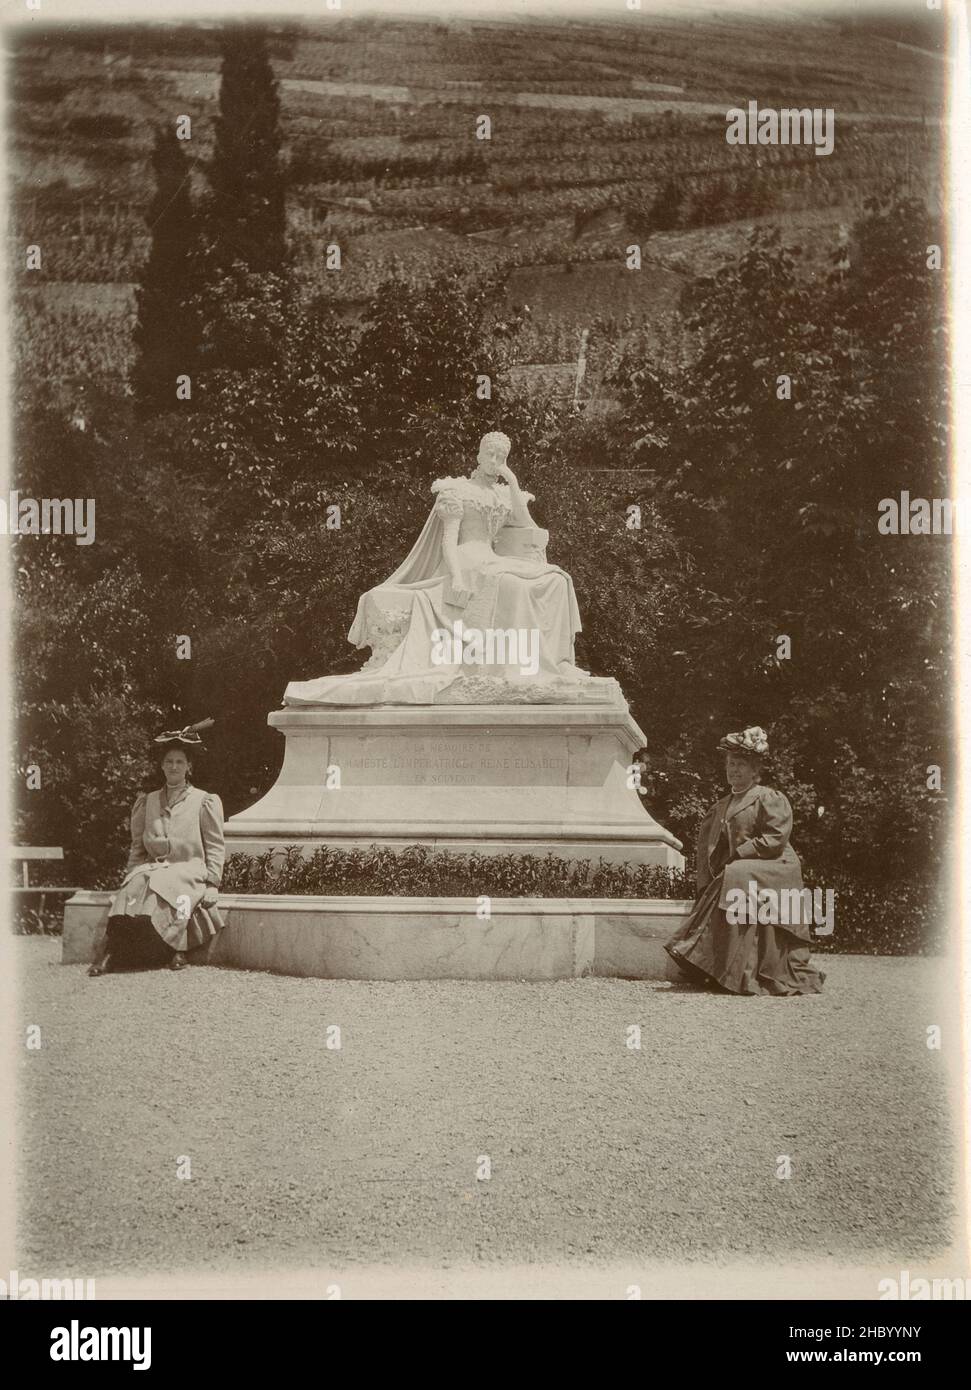 Photographie antique de c1905, statue en marbre de l'impératrice Elisabeth d'Autriche à Territet, Montreux, Suisse.Elisabeth (1837-1898) était impératrice d'Autriche et reine de Hongrie.Elle a été assassinée en 1898 à Montreux.SOURCE : TIRAGE PHOTOGRAPHIQUE ORIGINAL Banque D'Images